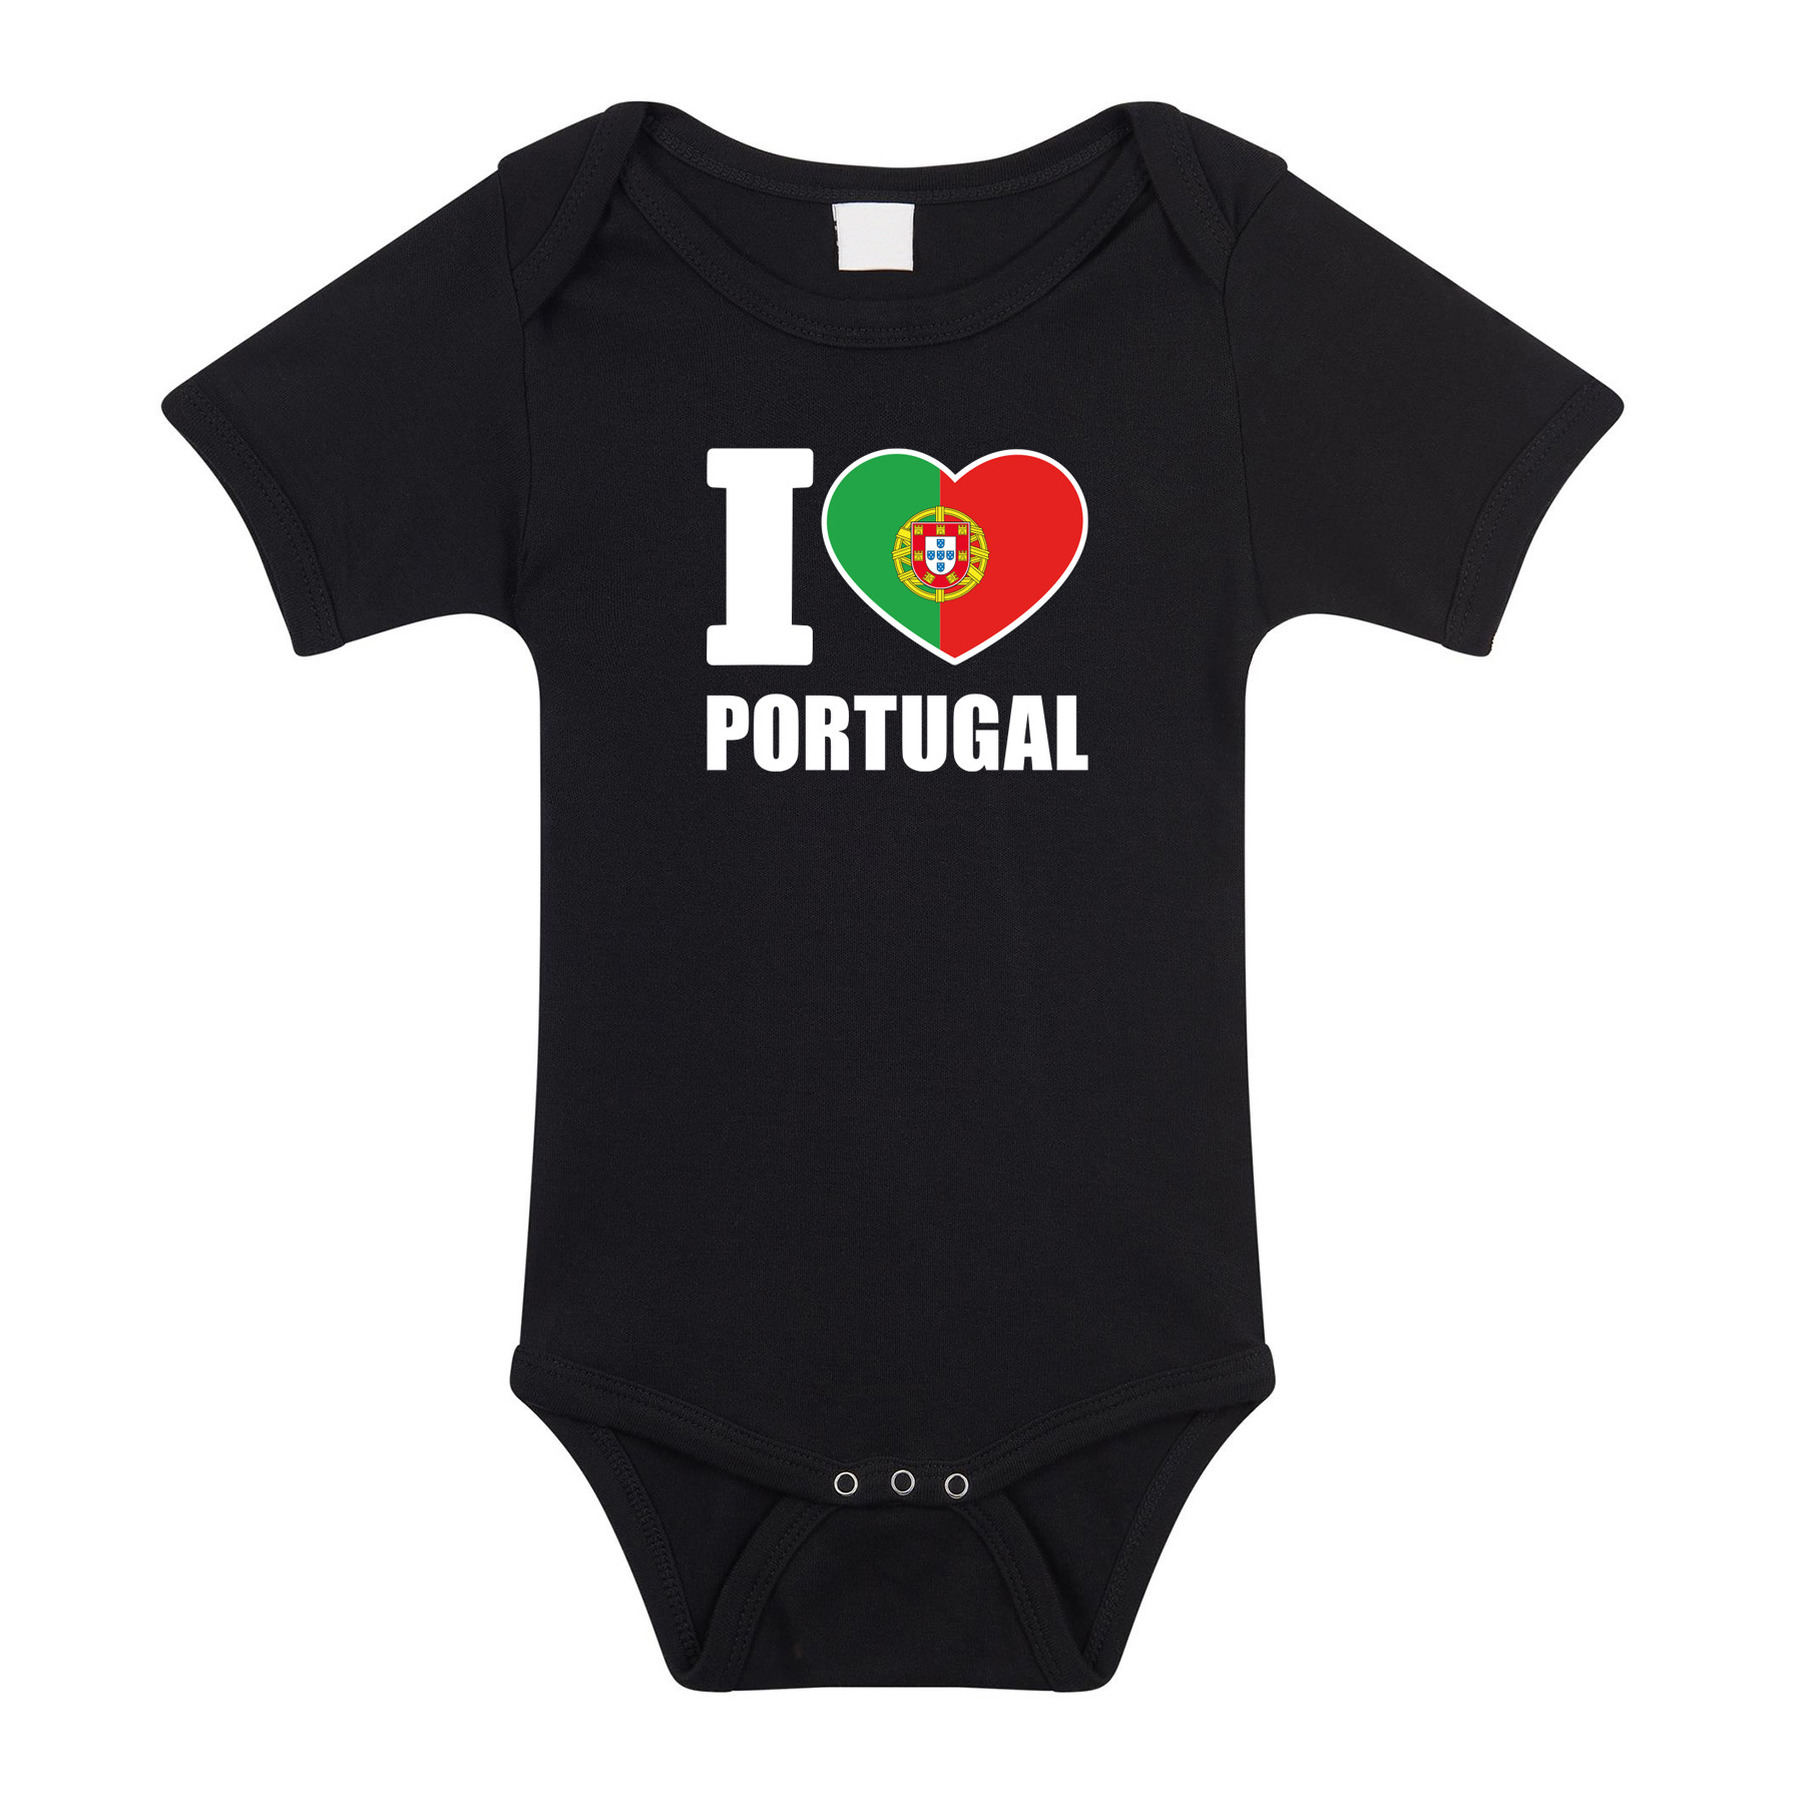 I love Portugal baby rompertje zwart jongen-meisje